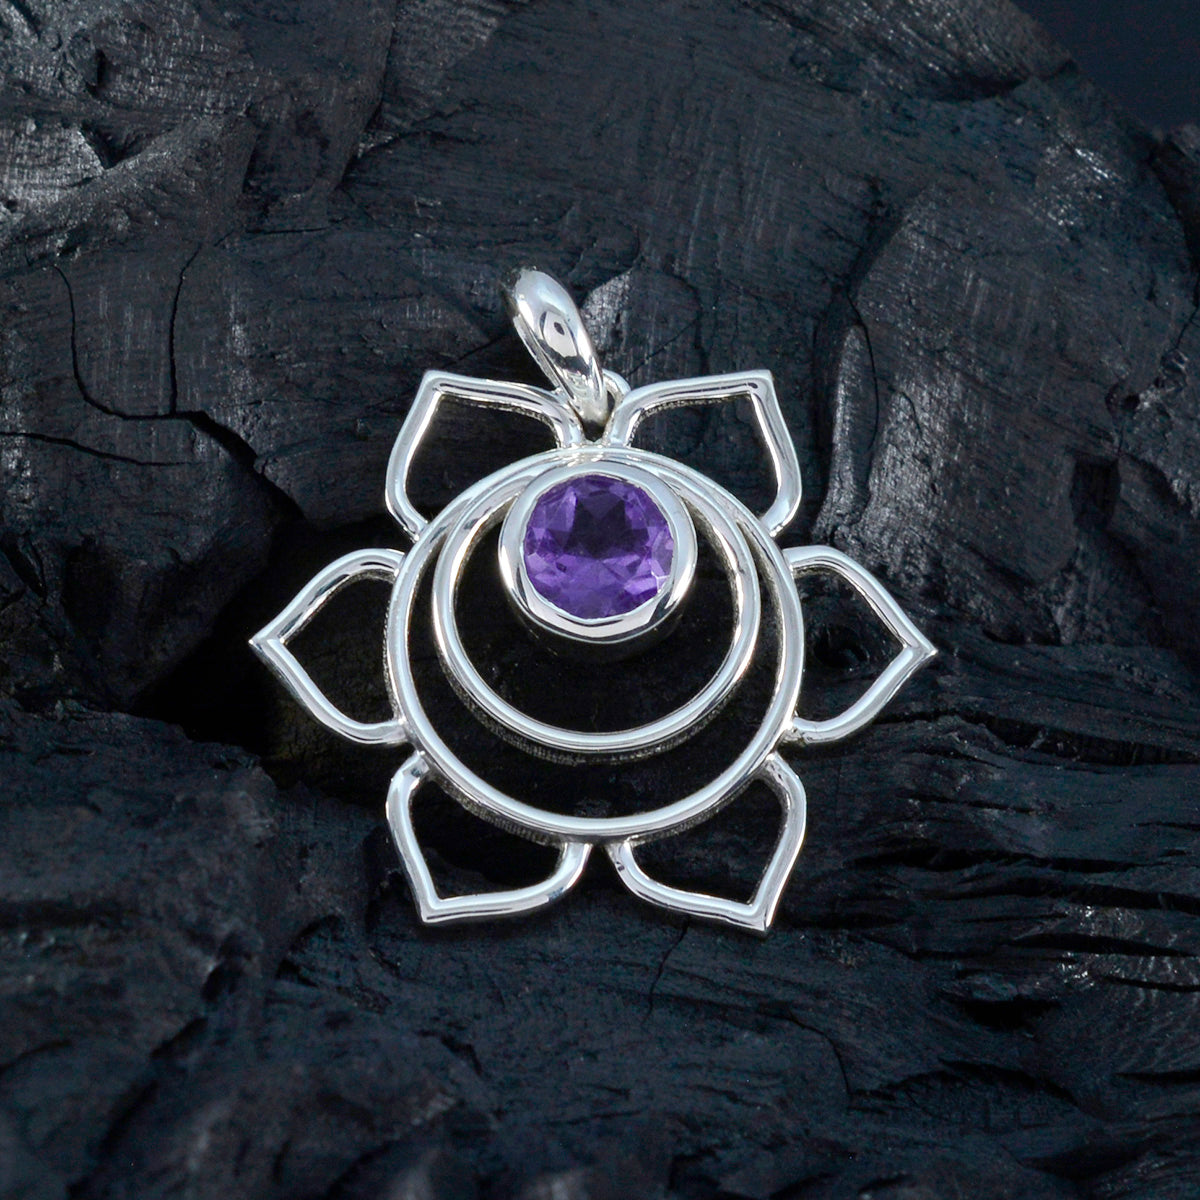 Riyo – pendentif rond en argent et améthyste violette à facettes, belles pierres précieuses, cadeau pour le lendemain de Noël